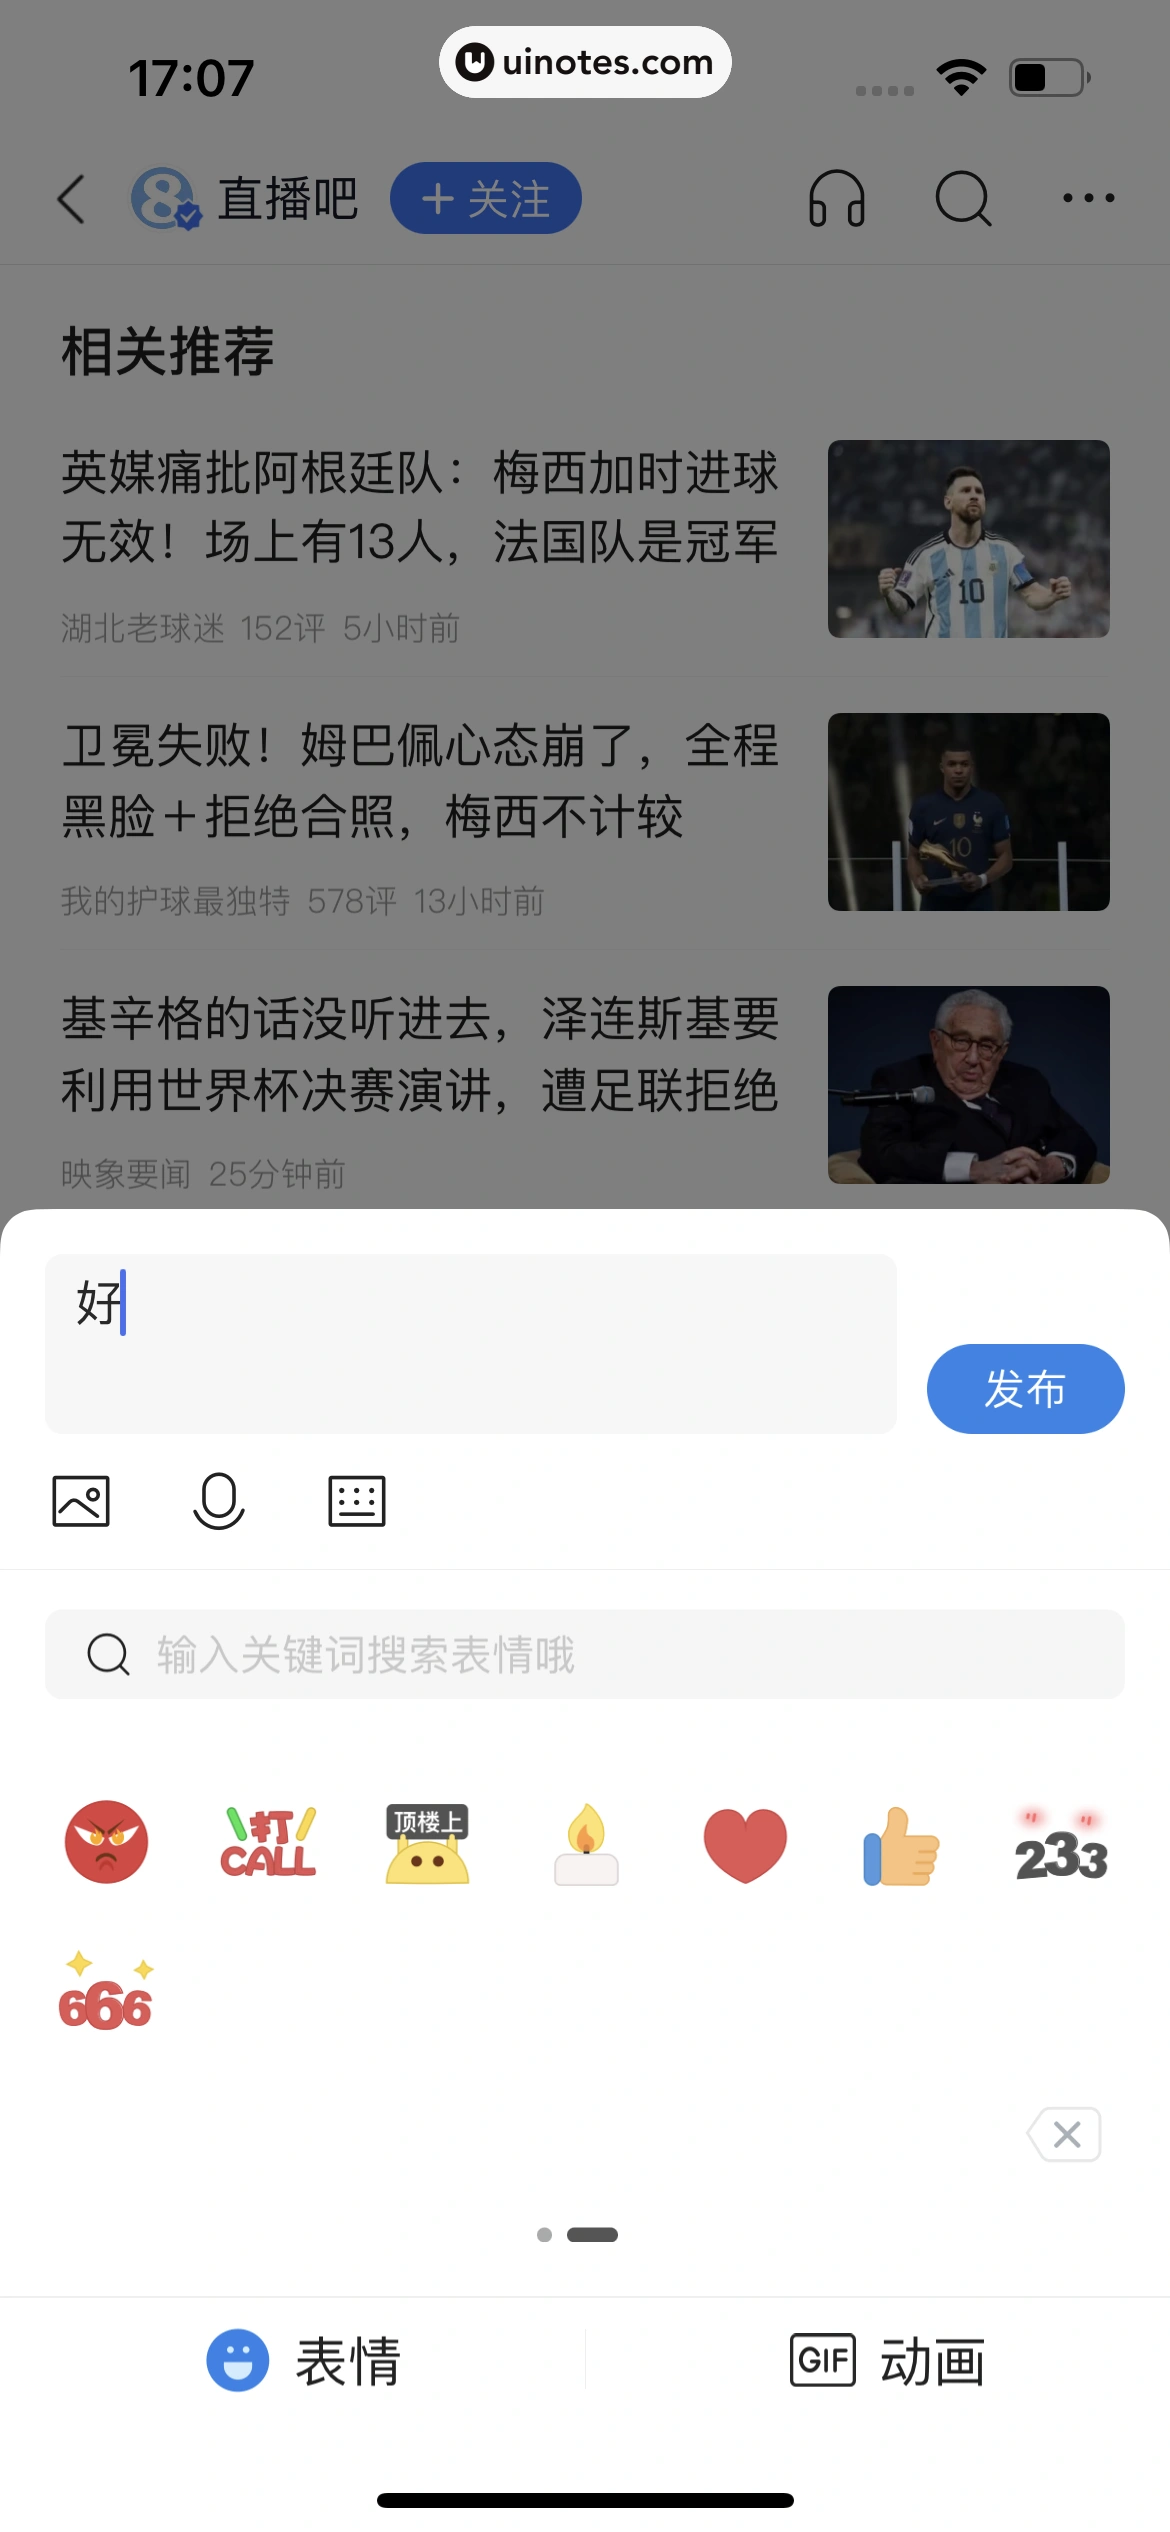 腾讯新闻 App 截图 033 - UI Notes